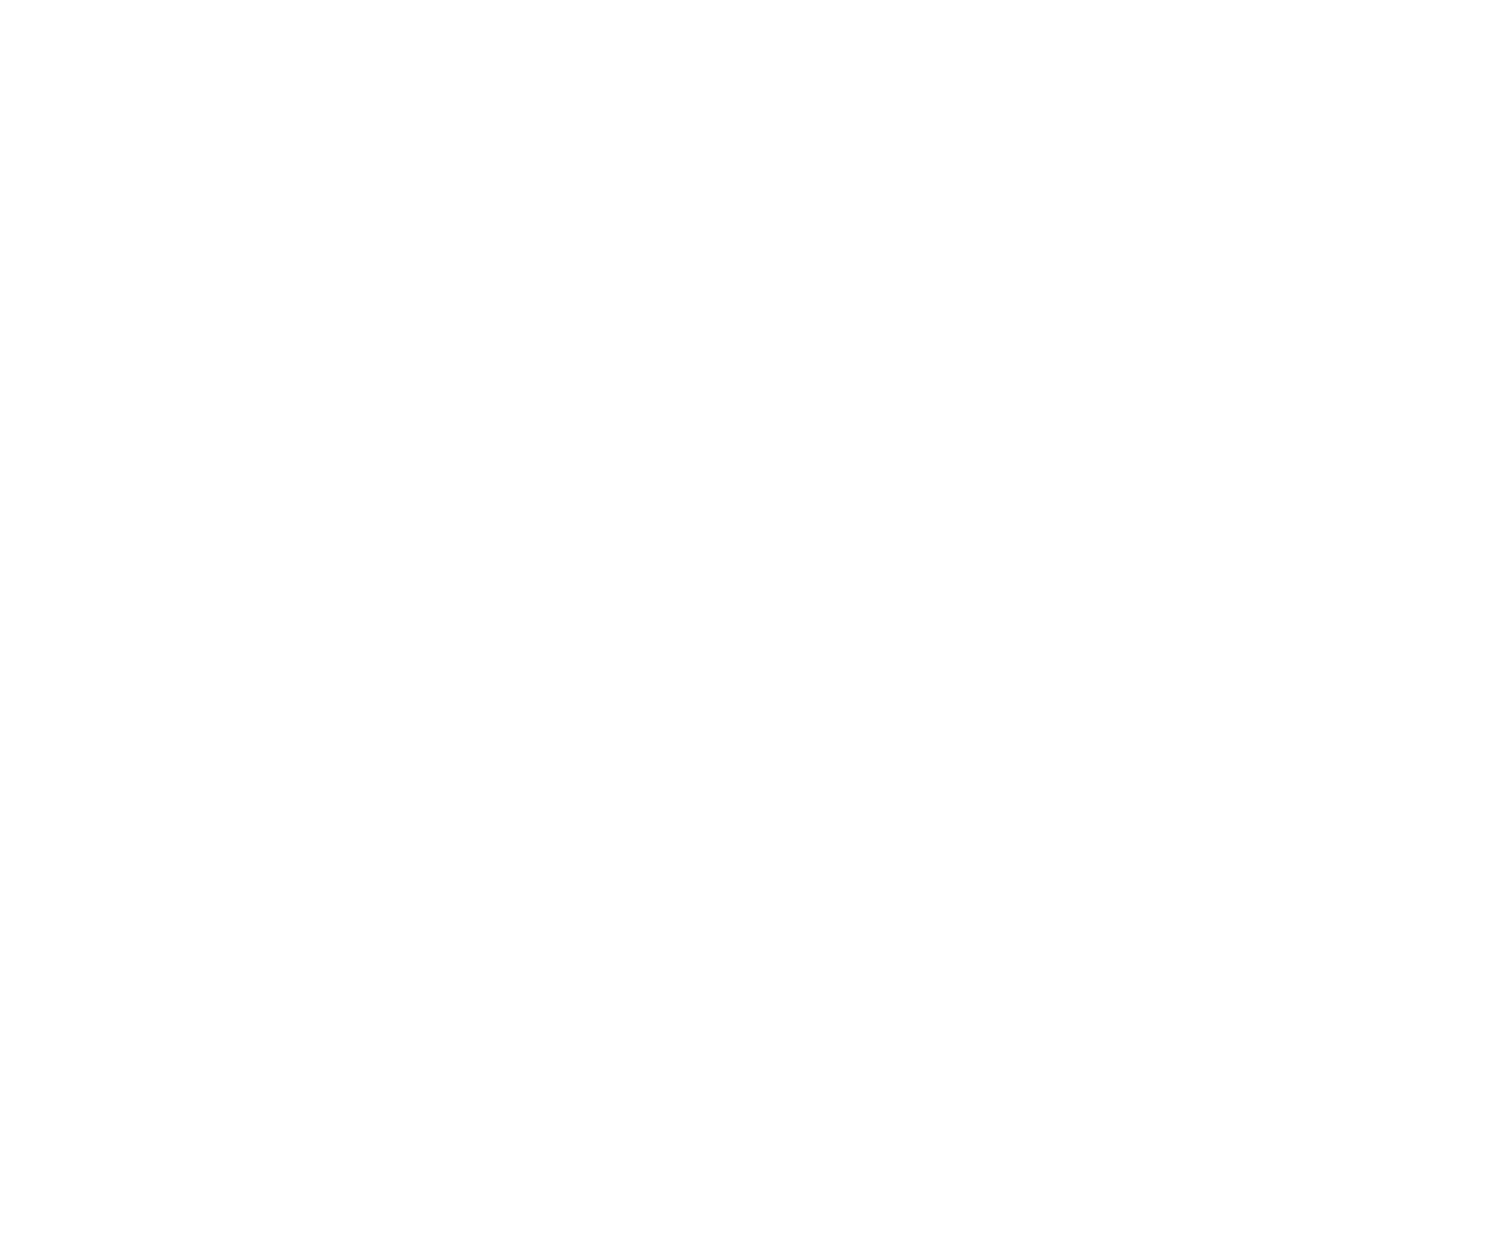 Grosvenor Capital Management logo for dark backgrounds (transparent PNG)